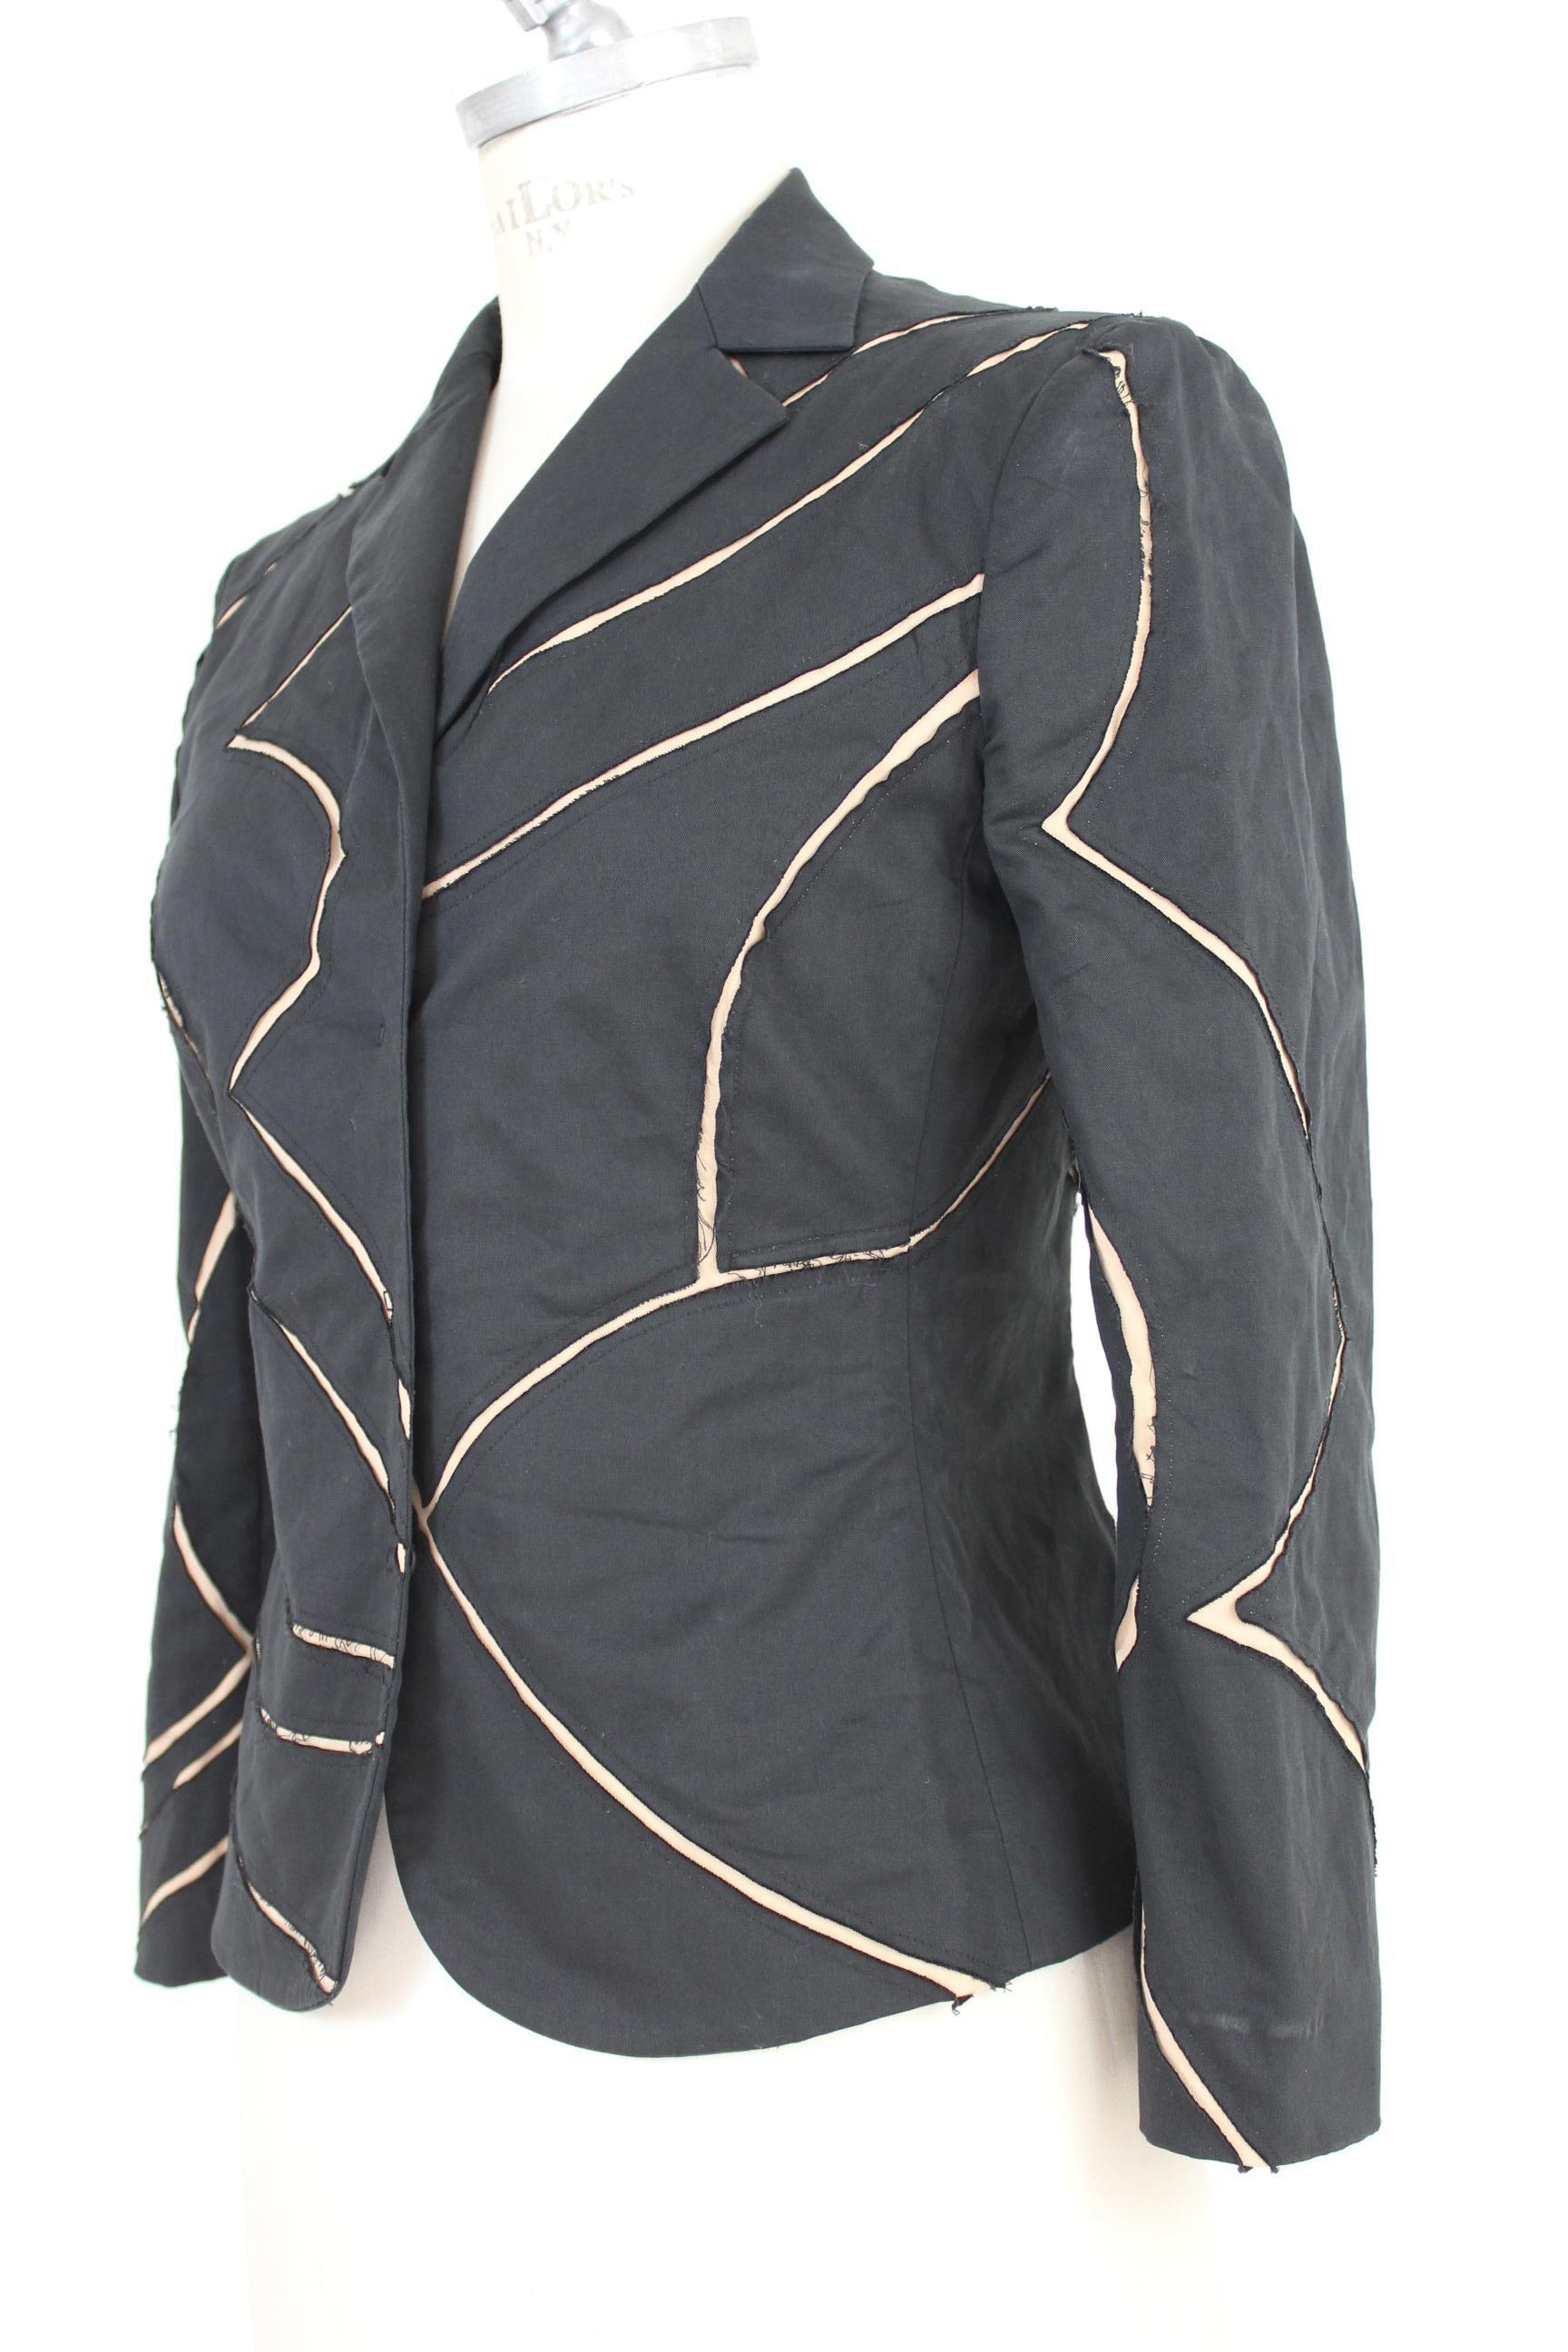 Women's Alberta Ferretti Black Beige Cut Laser Stripes Blazer Jacket 2000s